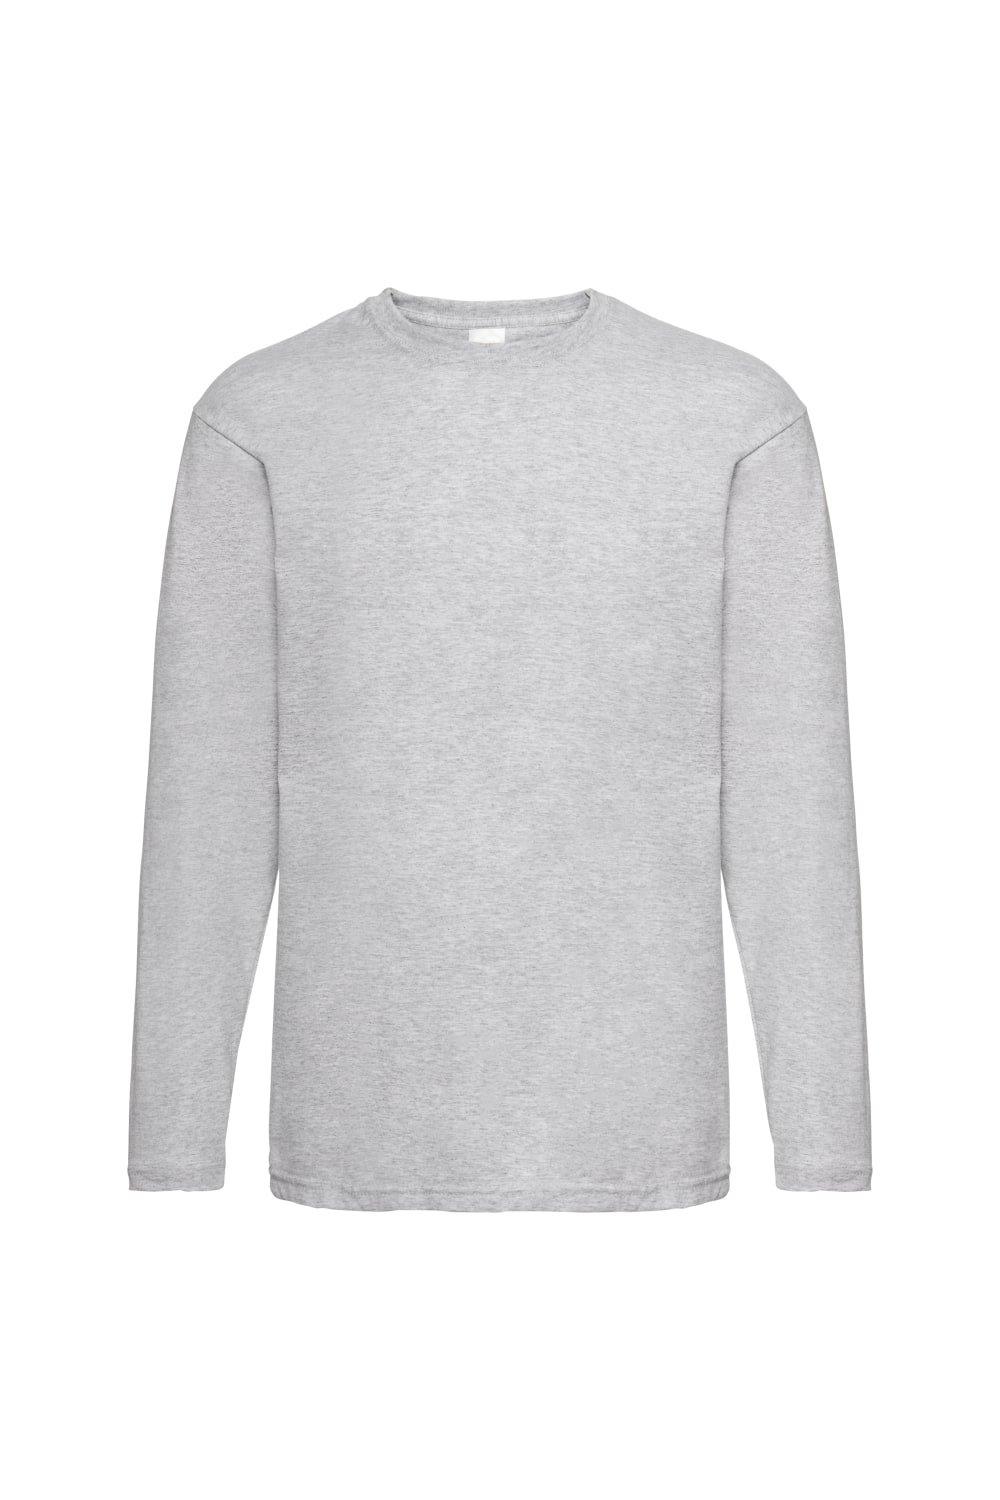 Повседневная футболка Value с длинным рукавом Universal Textiles, серый мужская футболка милый пришелец 2xl серый меланж